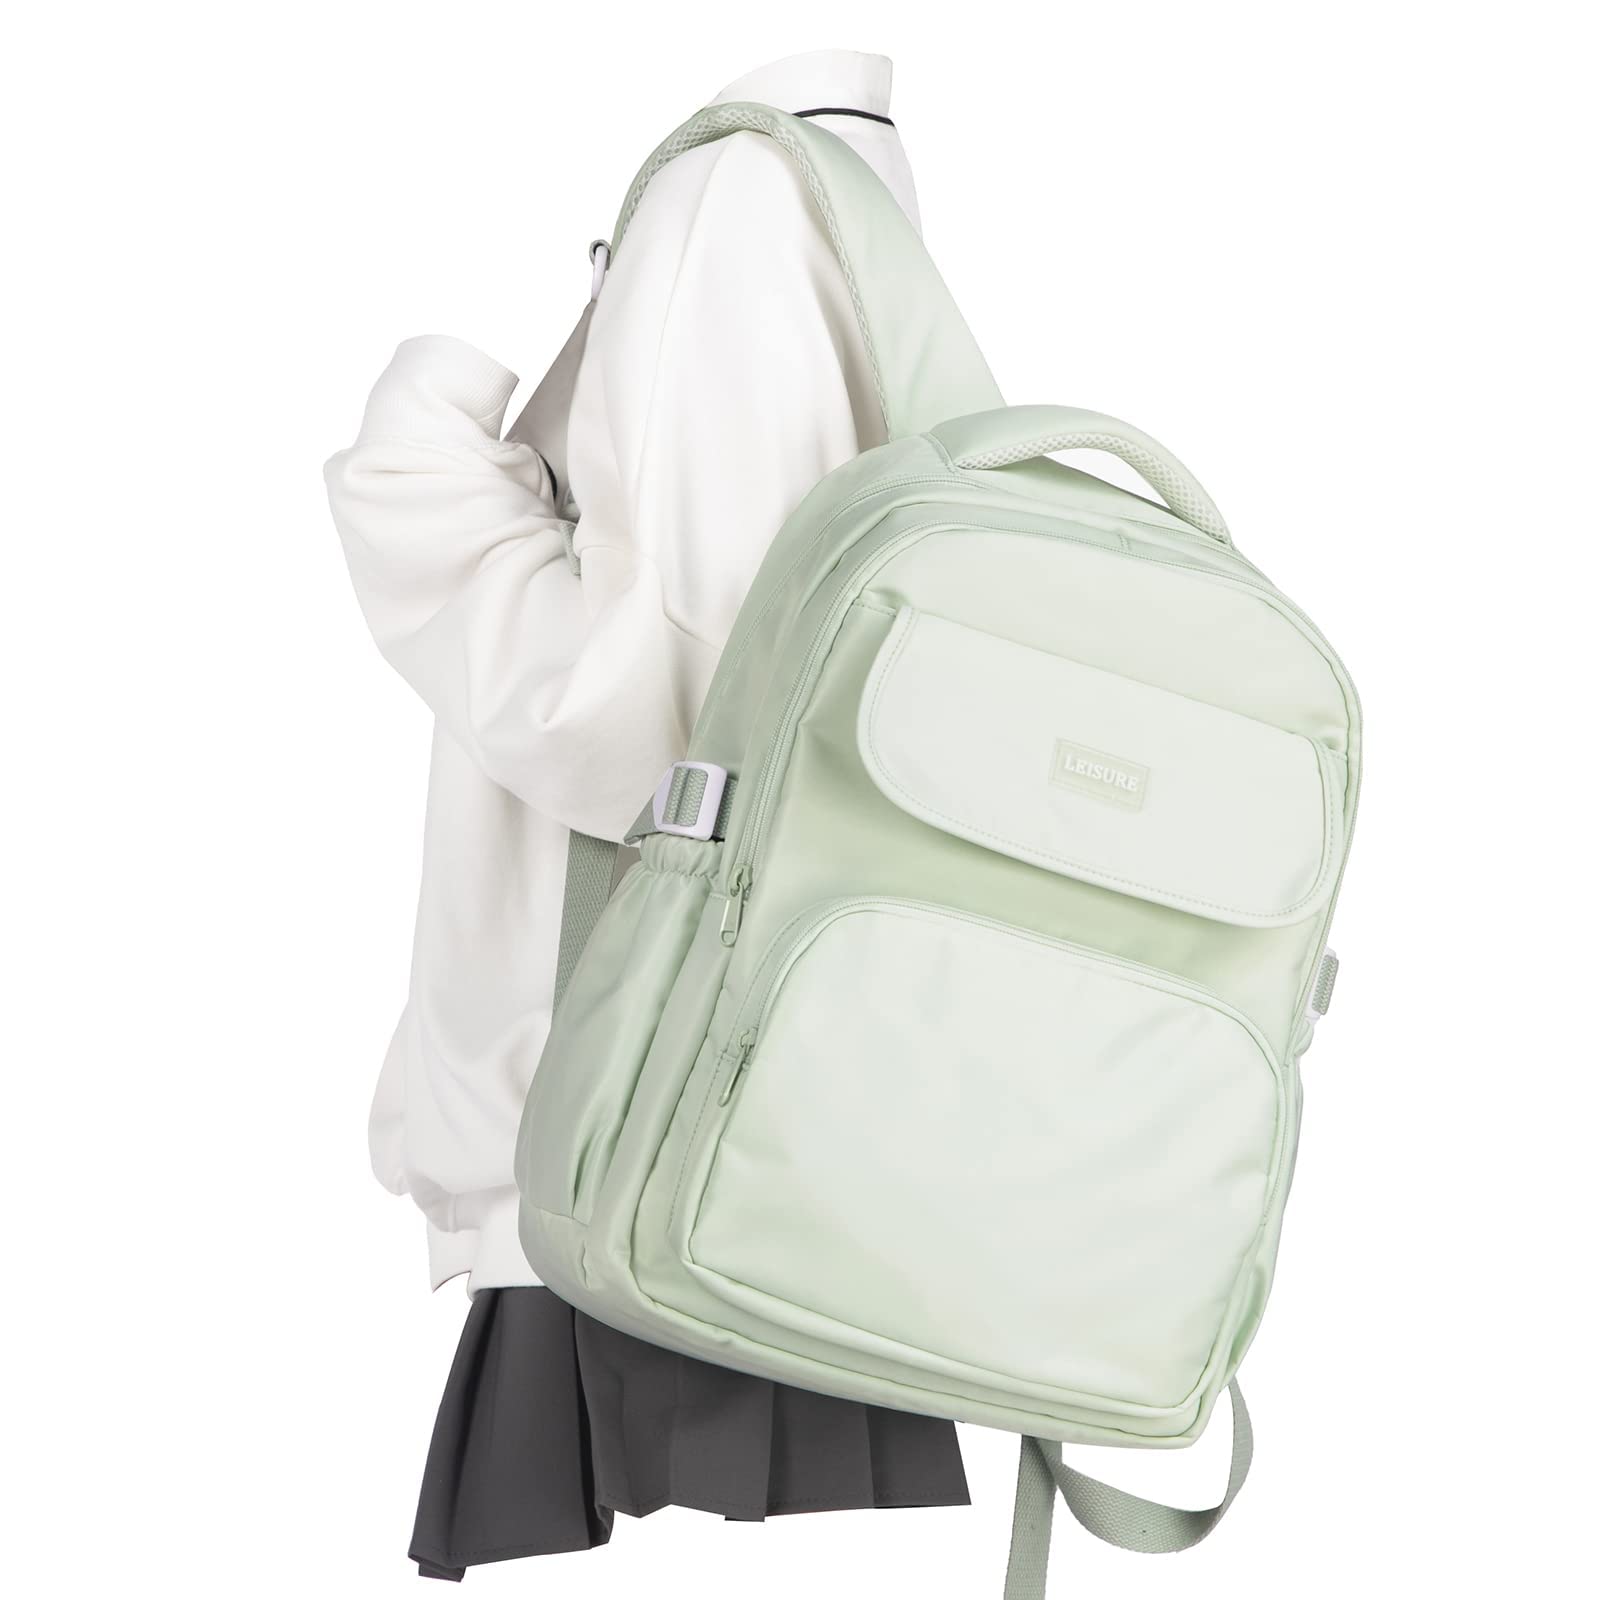 Student Laptop Travel Backpack Waterproof